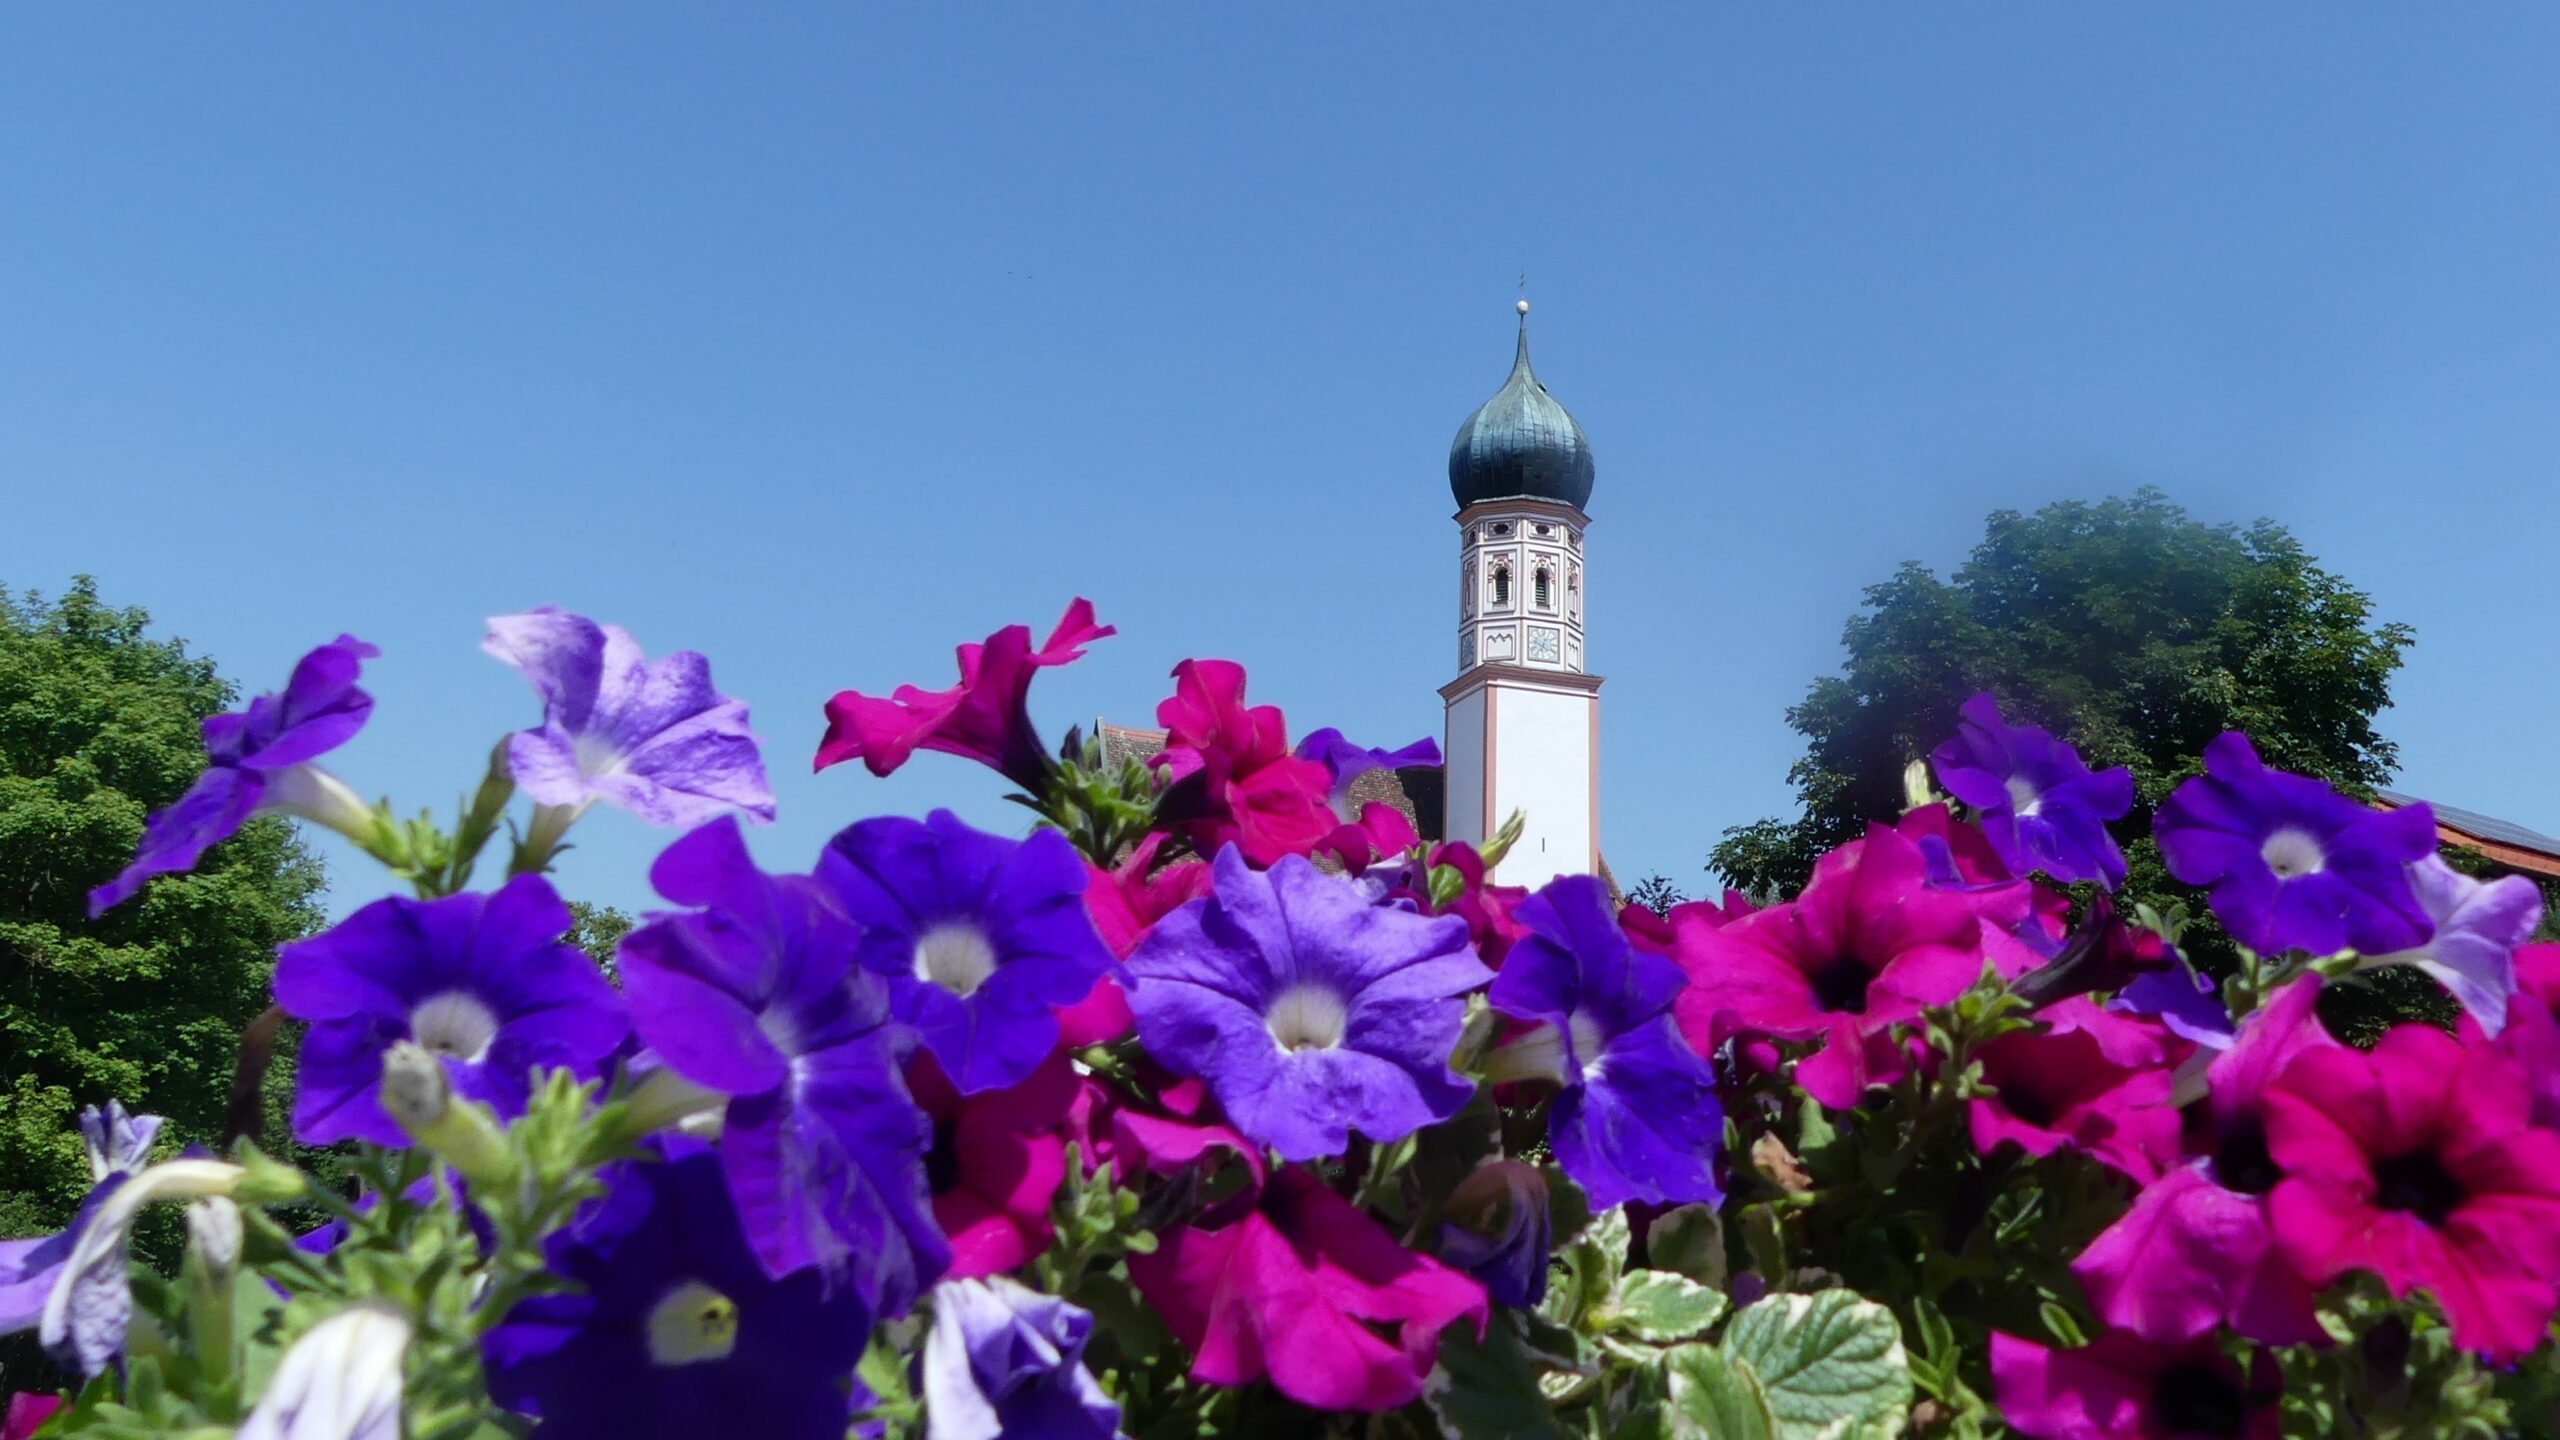 Blumen in satten violett Tönen leuchten vor dem tief blauen Himmel. In der Mitte des Bildes strahlt ein regional typischer Zwiebelkirchturm.